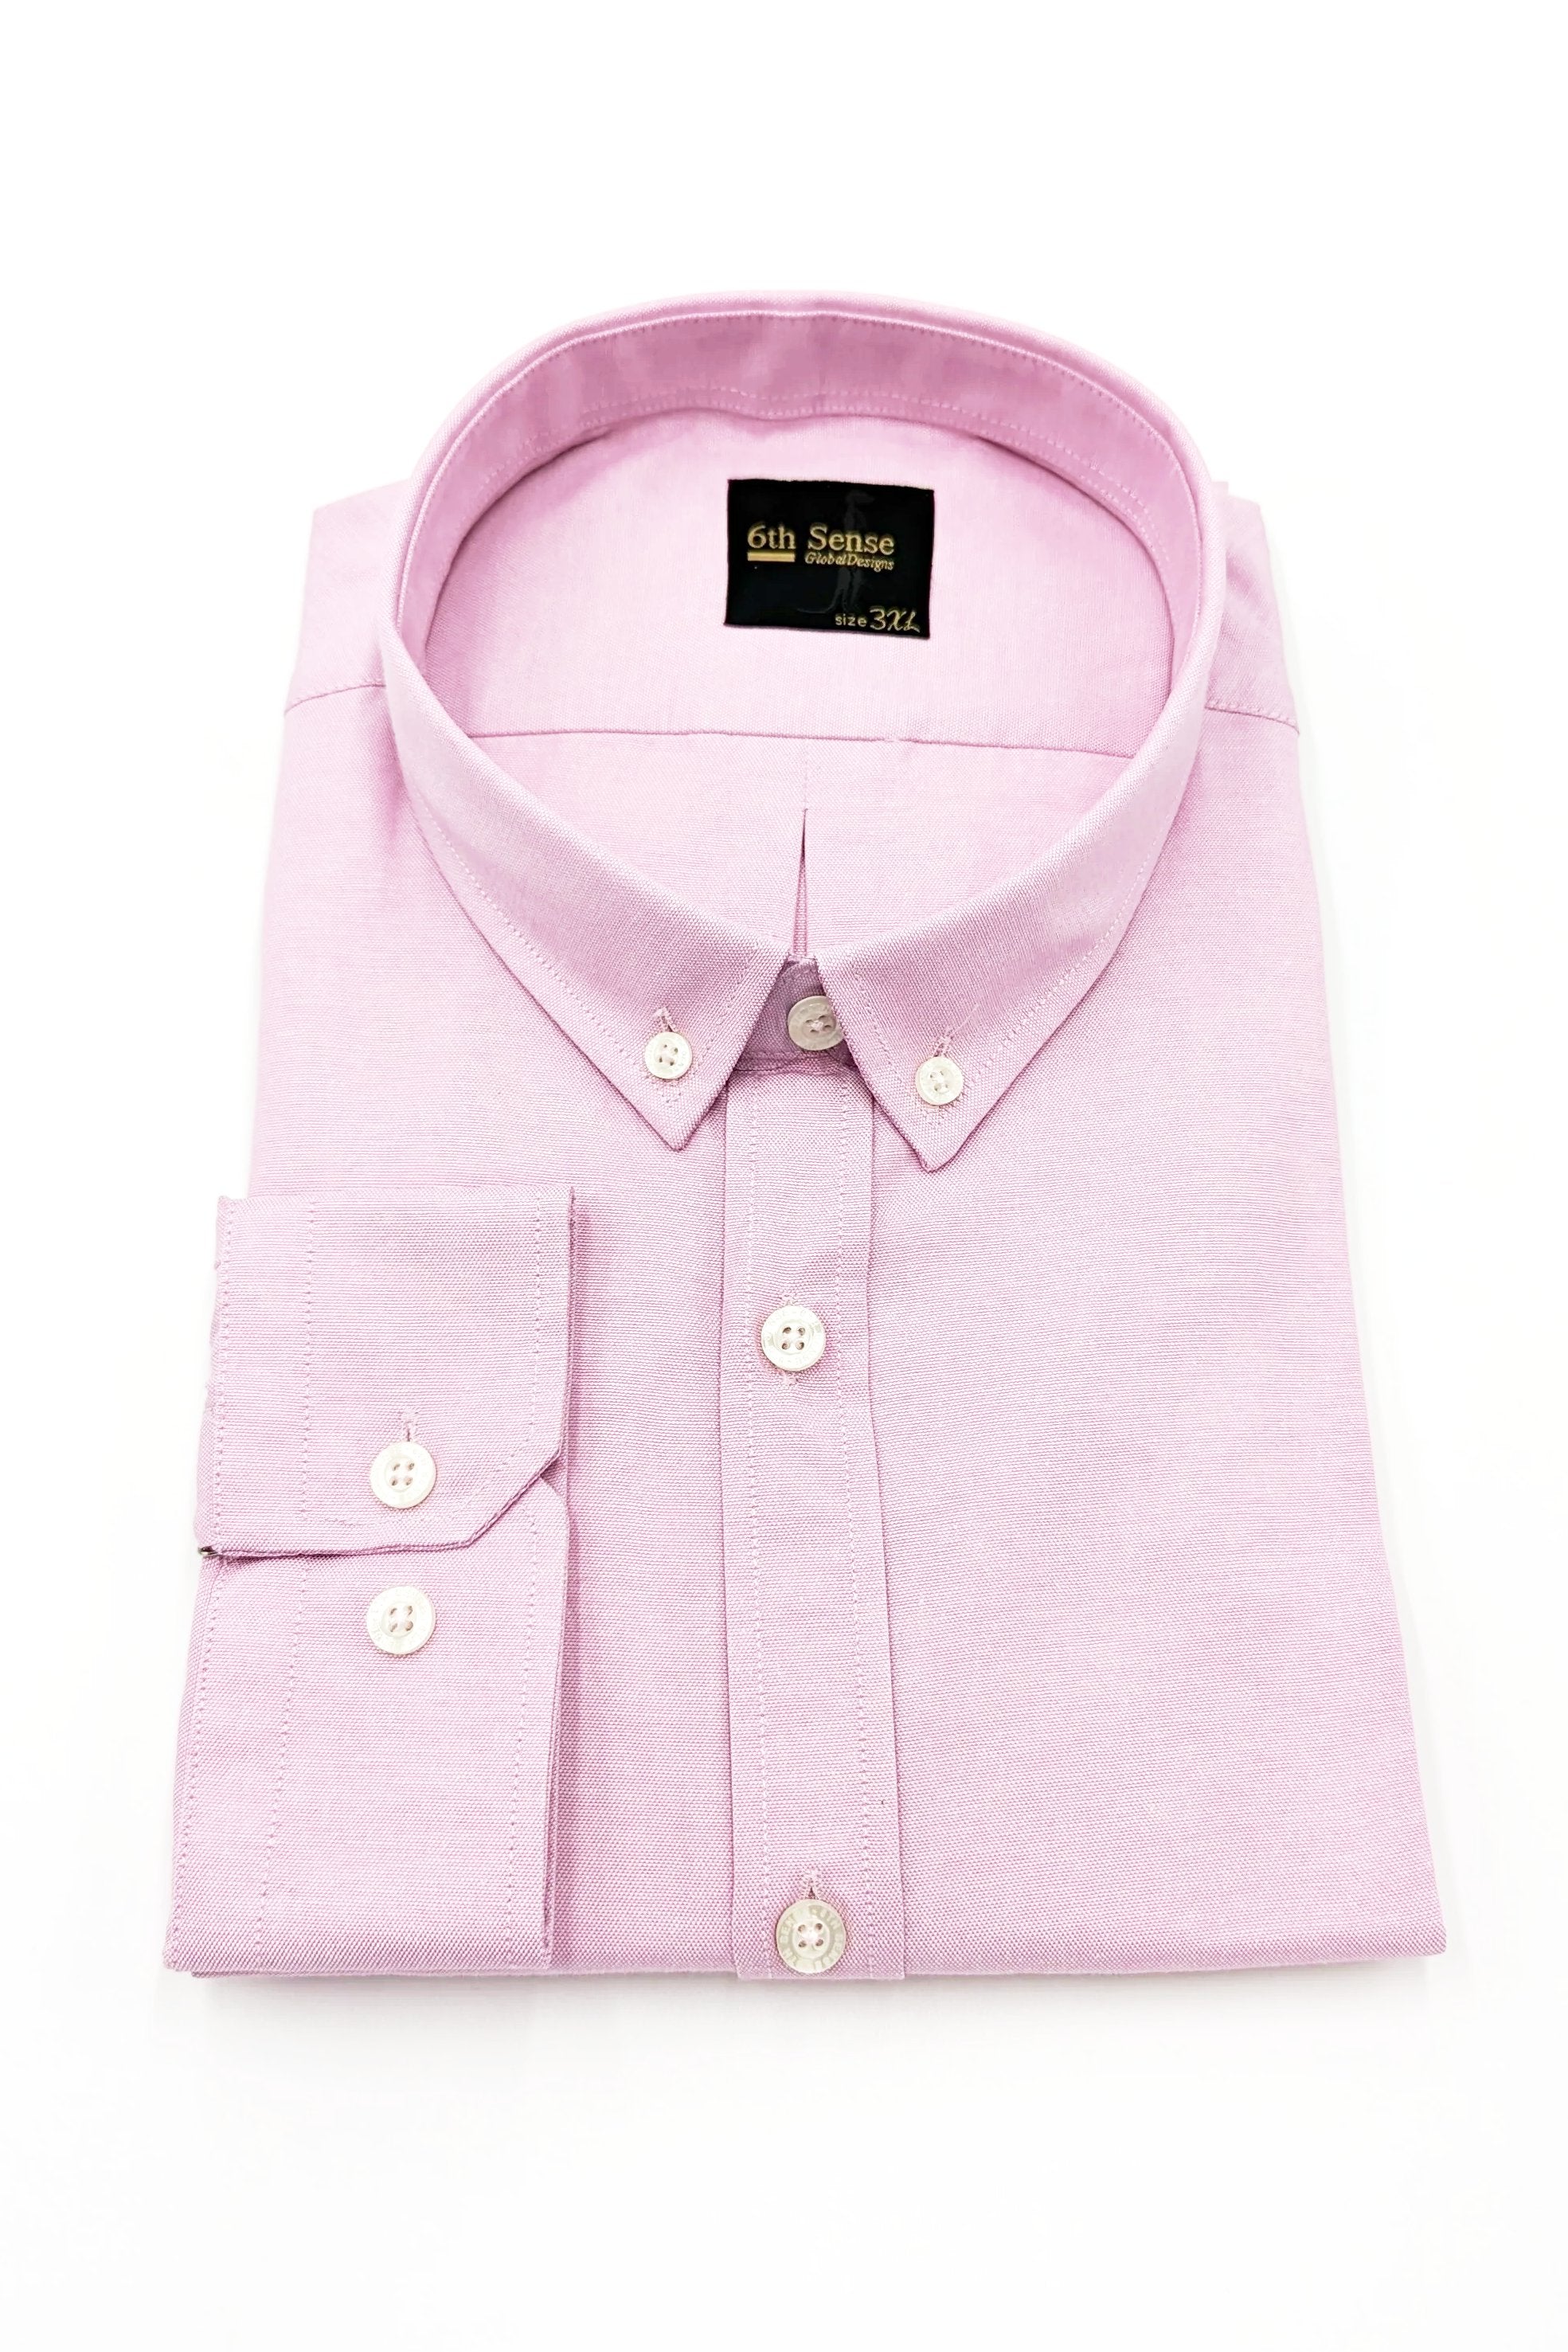 Men's Button Down Pink Plain Long Sleeve Shirt